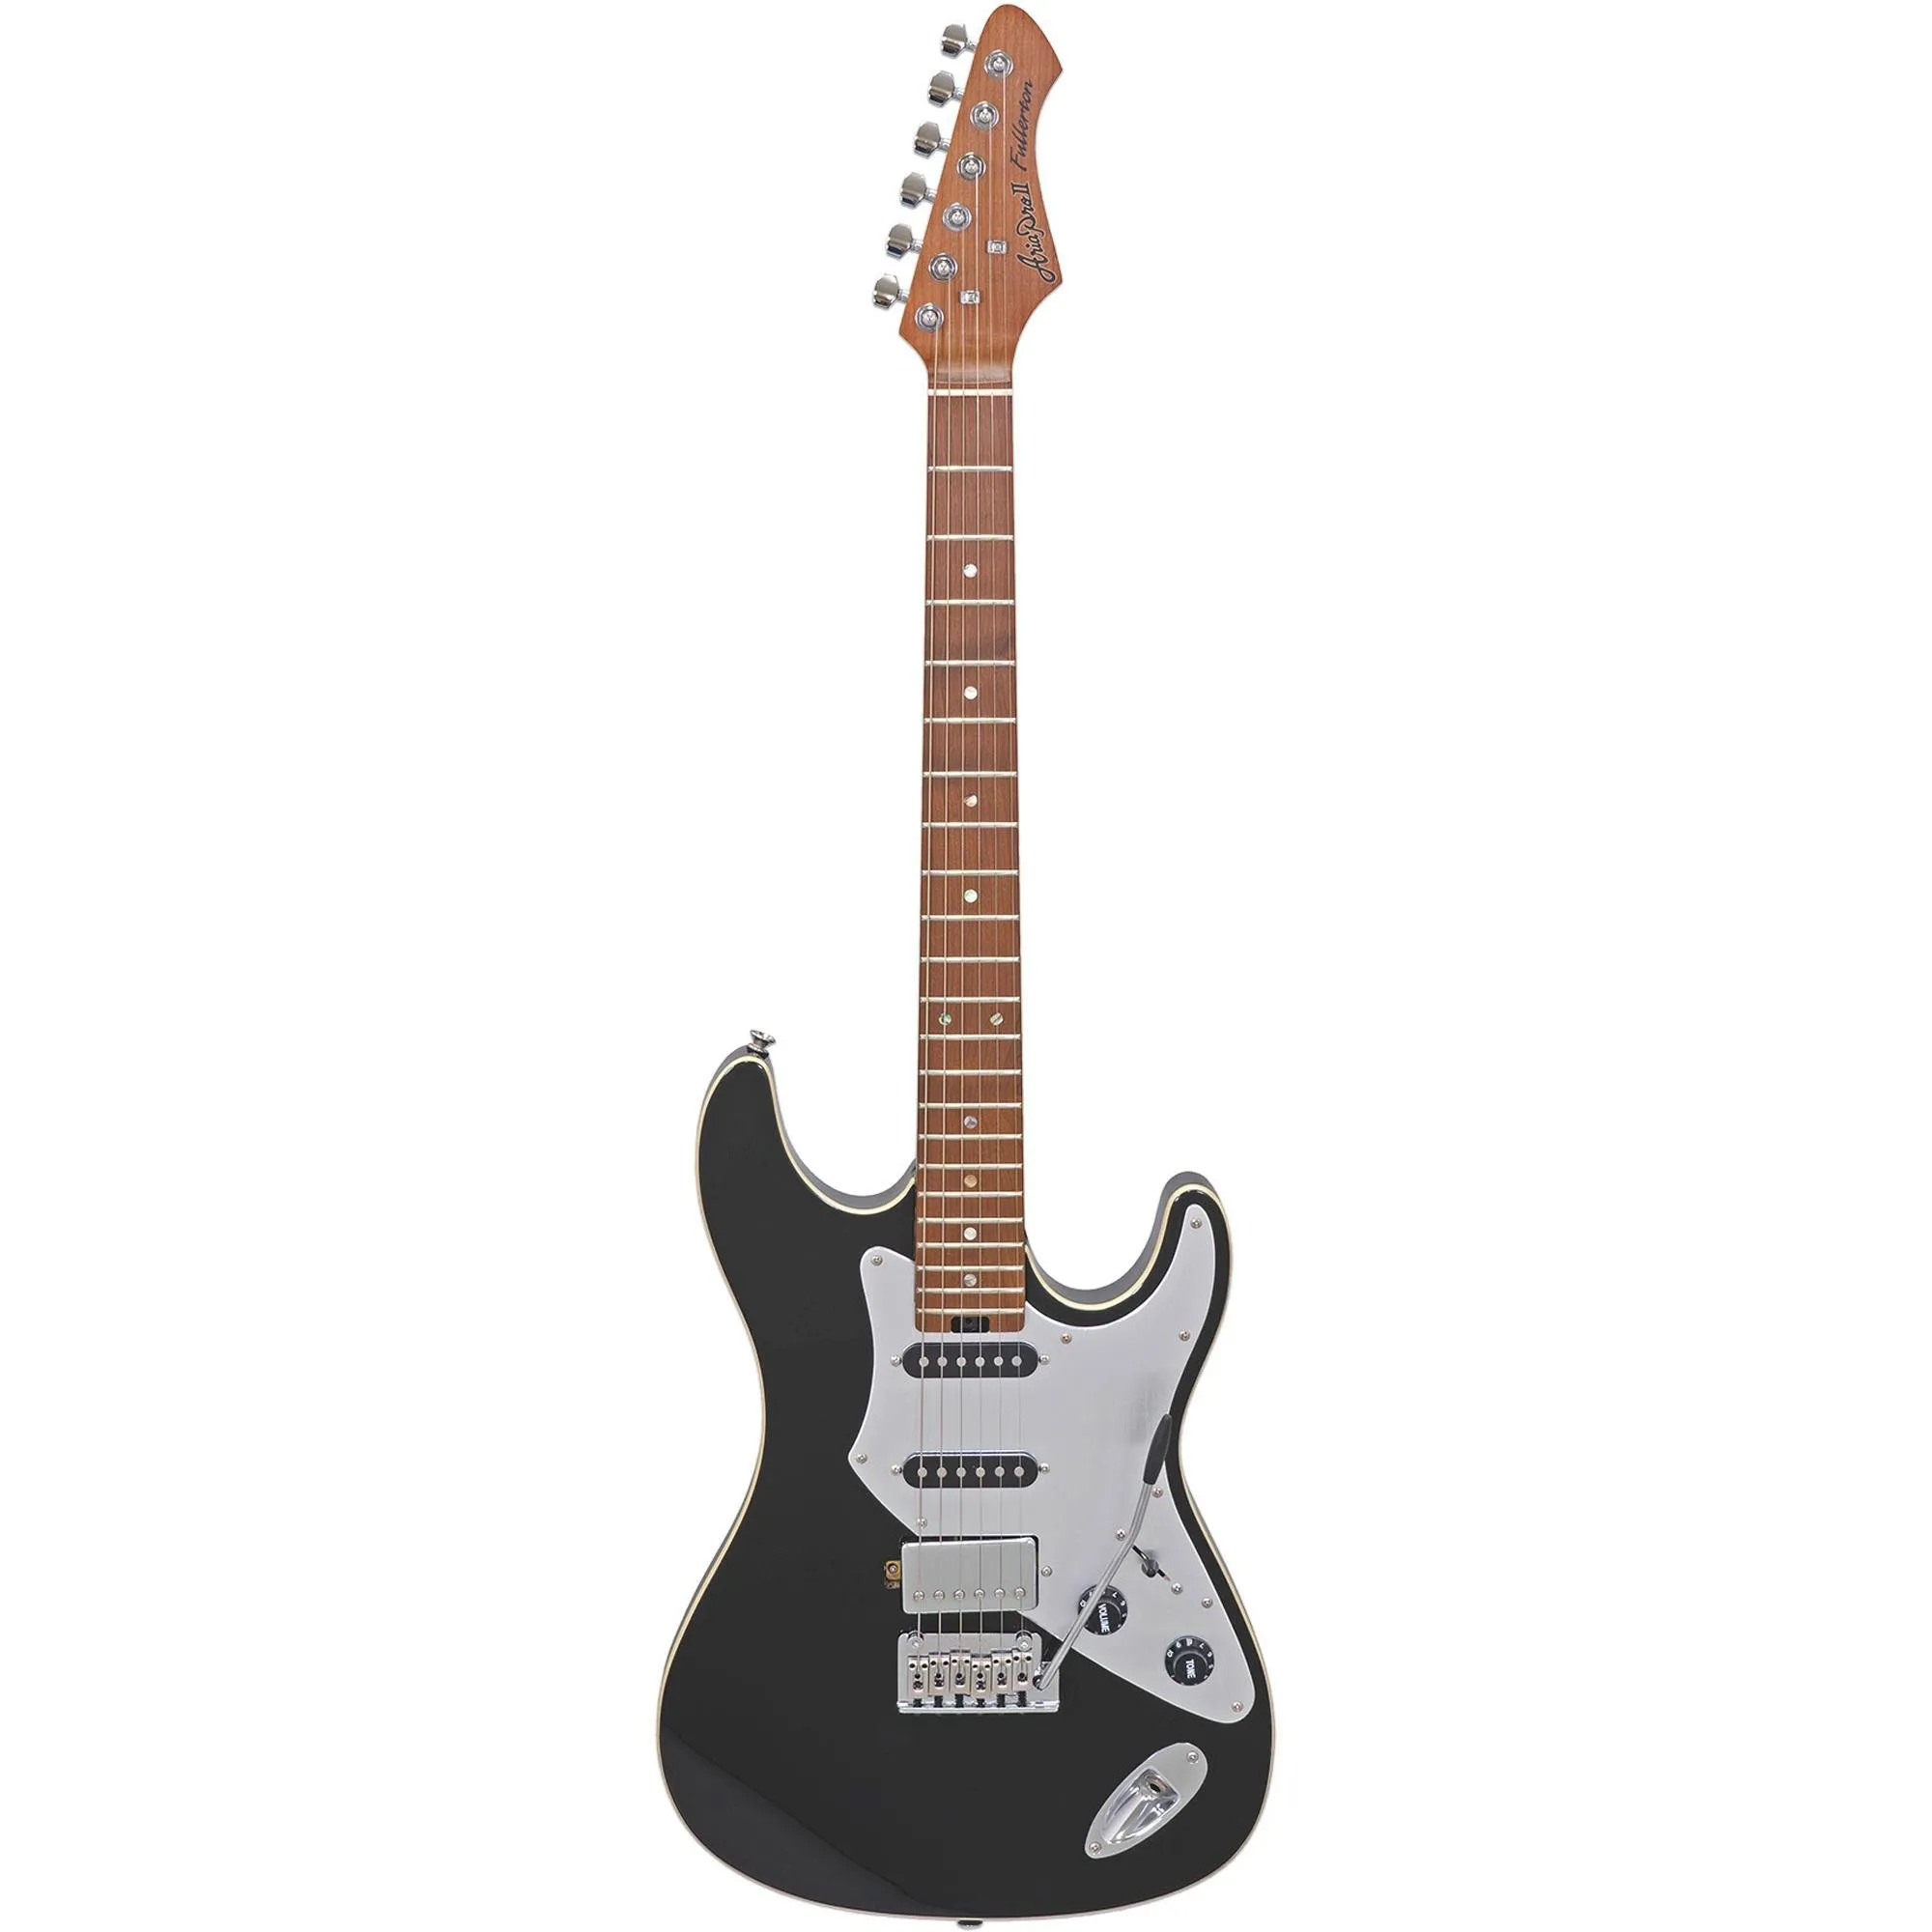 Guitarra Aria Pro II 714-GTR Fullerton Black por 0,00 à vista no boleto/pix ou parcele em até 1x sem juros. Compre na loja Mundomax!